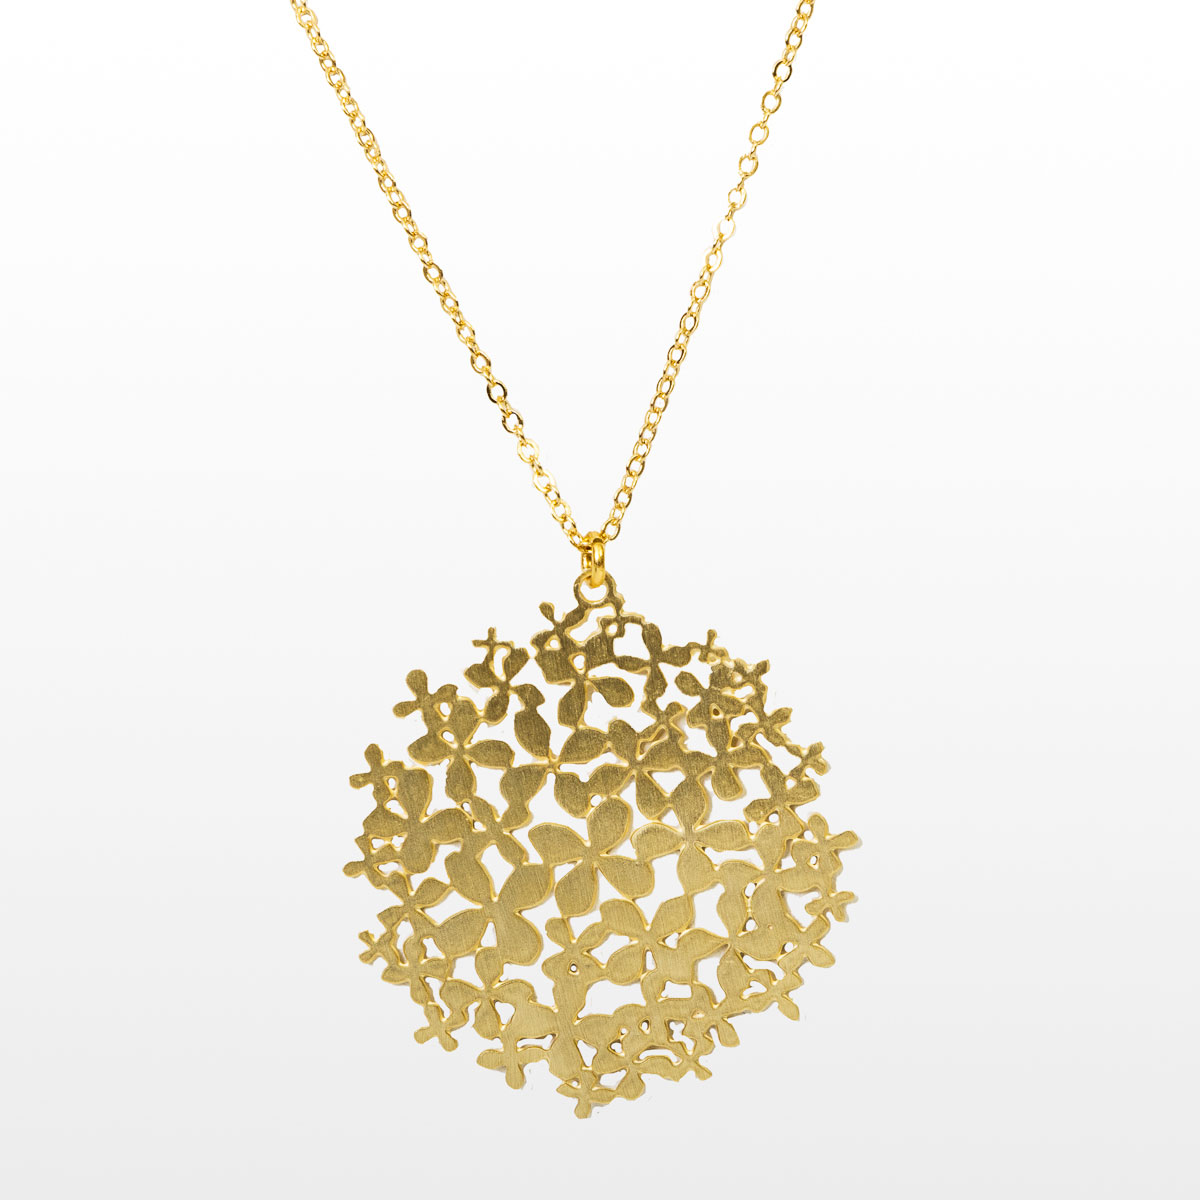 Gustav Klimt pendant : Flower Garden (gold or silver finish) - Gold finish